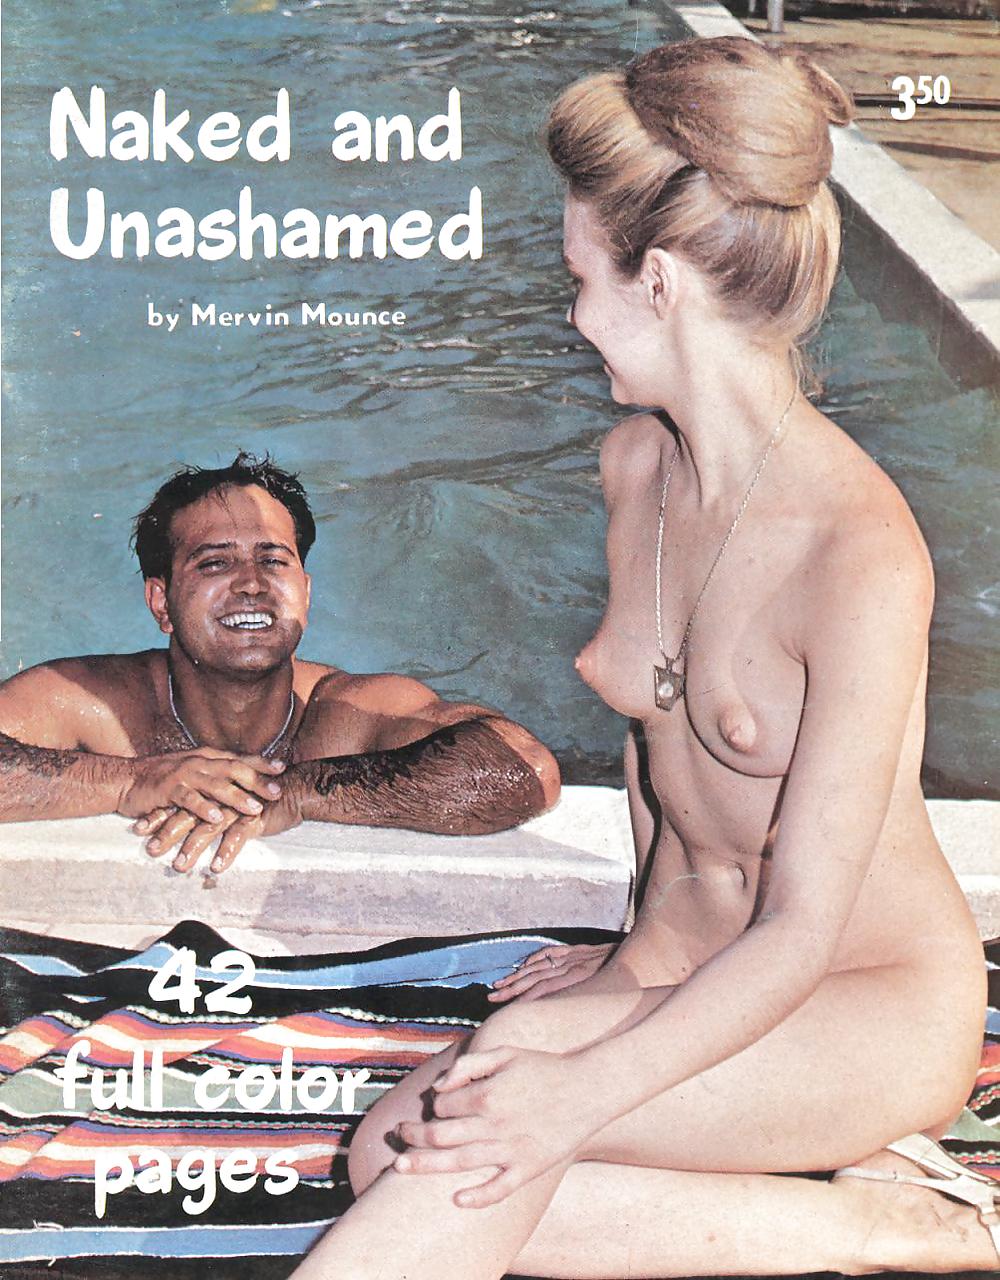 Nudo e senza vergogna - rivista nudista d'epoca
 #24241585